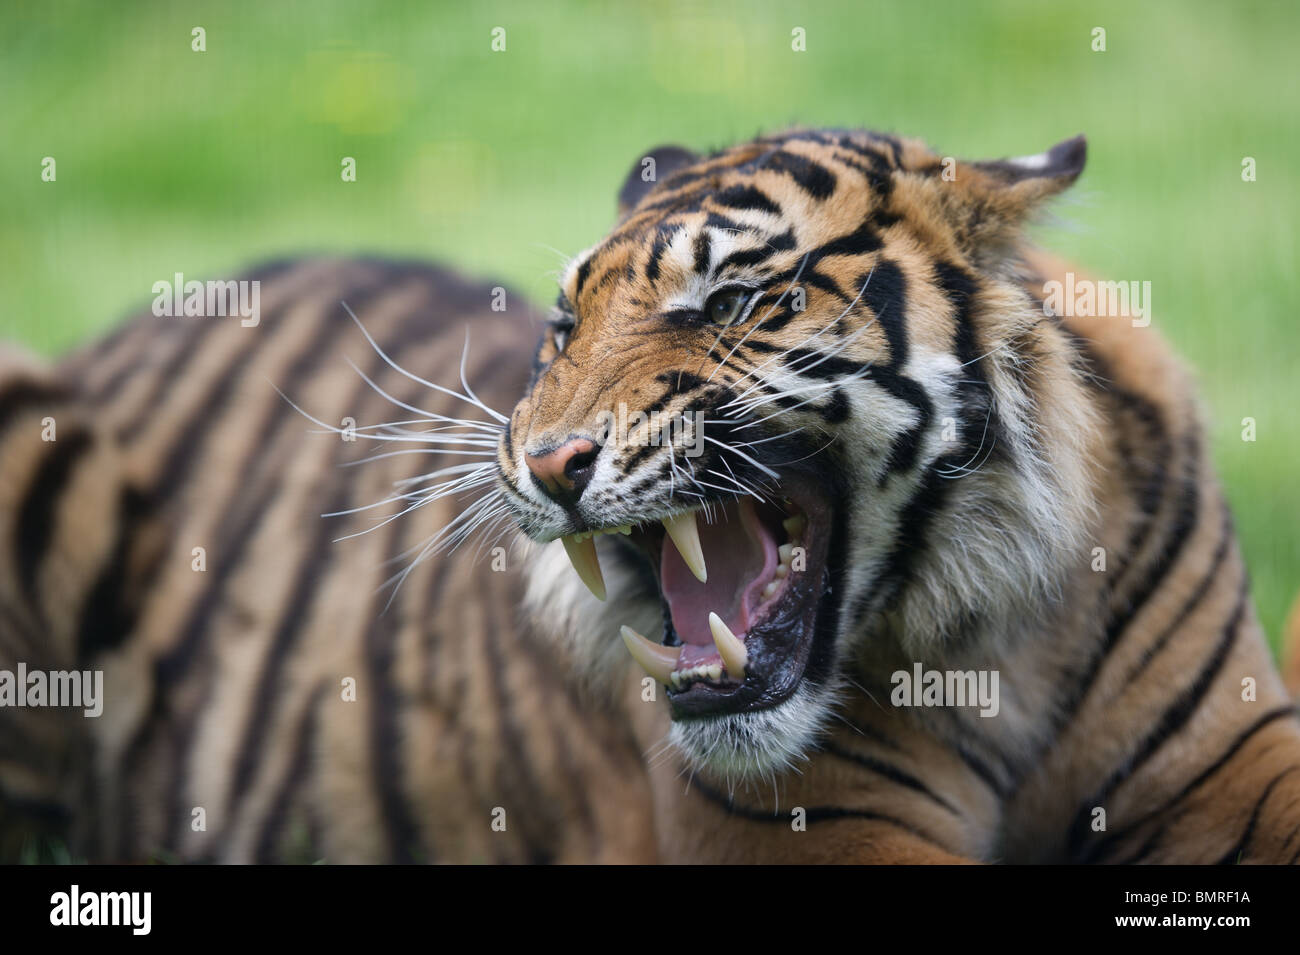 Sumatran tiger roaring, growling and hissing Stock Photo